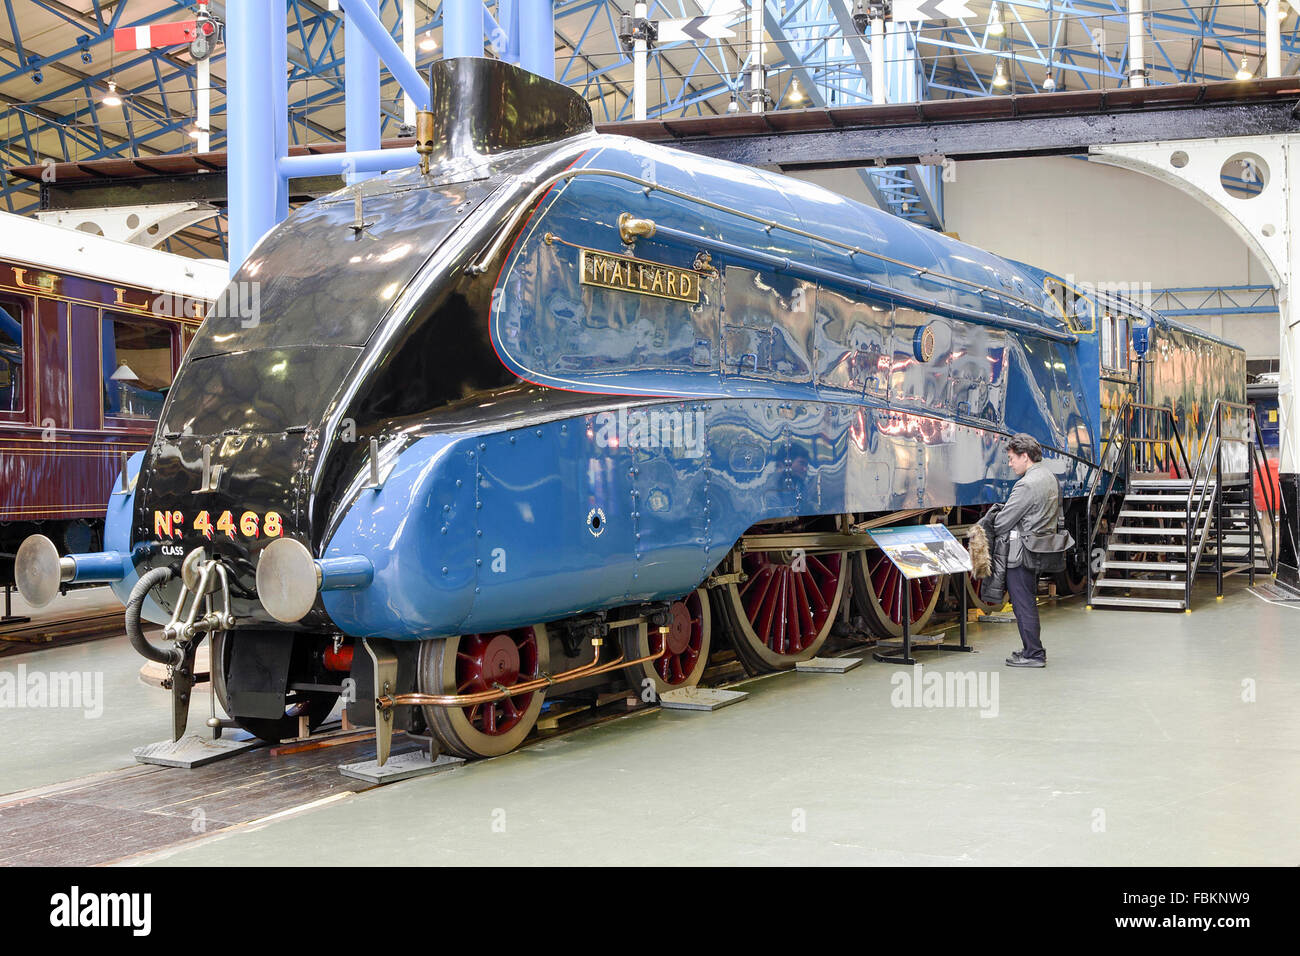 Immagine della locomotiva storica 'mallard' una meraviglia ingegneristica collocati permanentemente al museo nazionale delle ferrovie, York, UK. Foto Stock